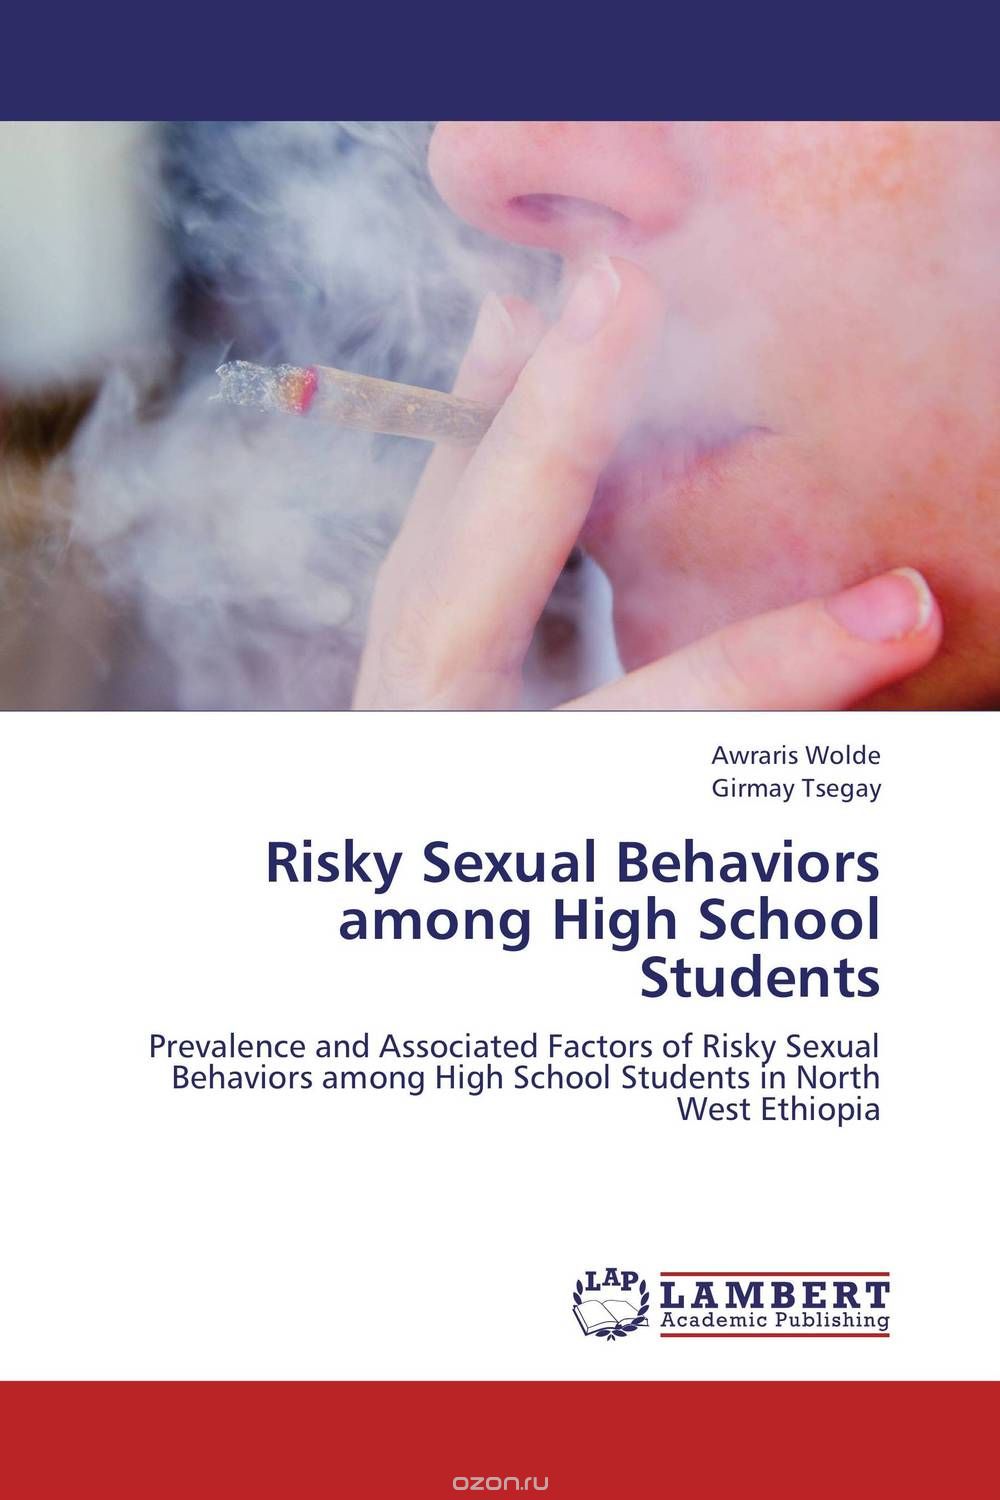 Скачать книгу "Risky Sexual Behaviors among High School Students"